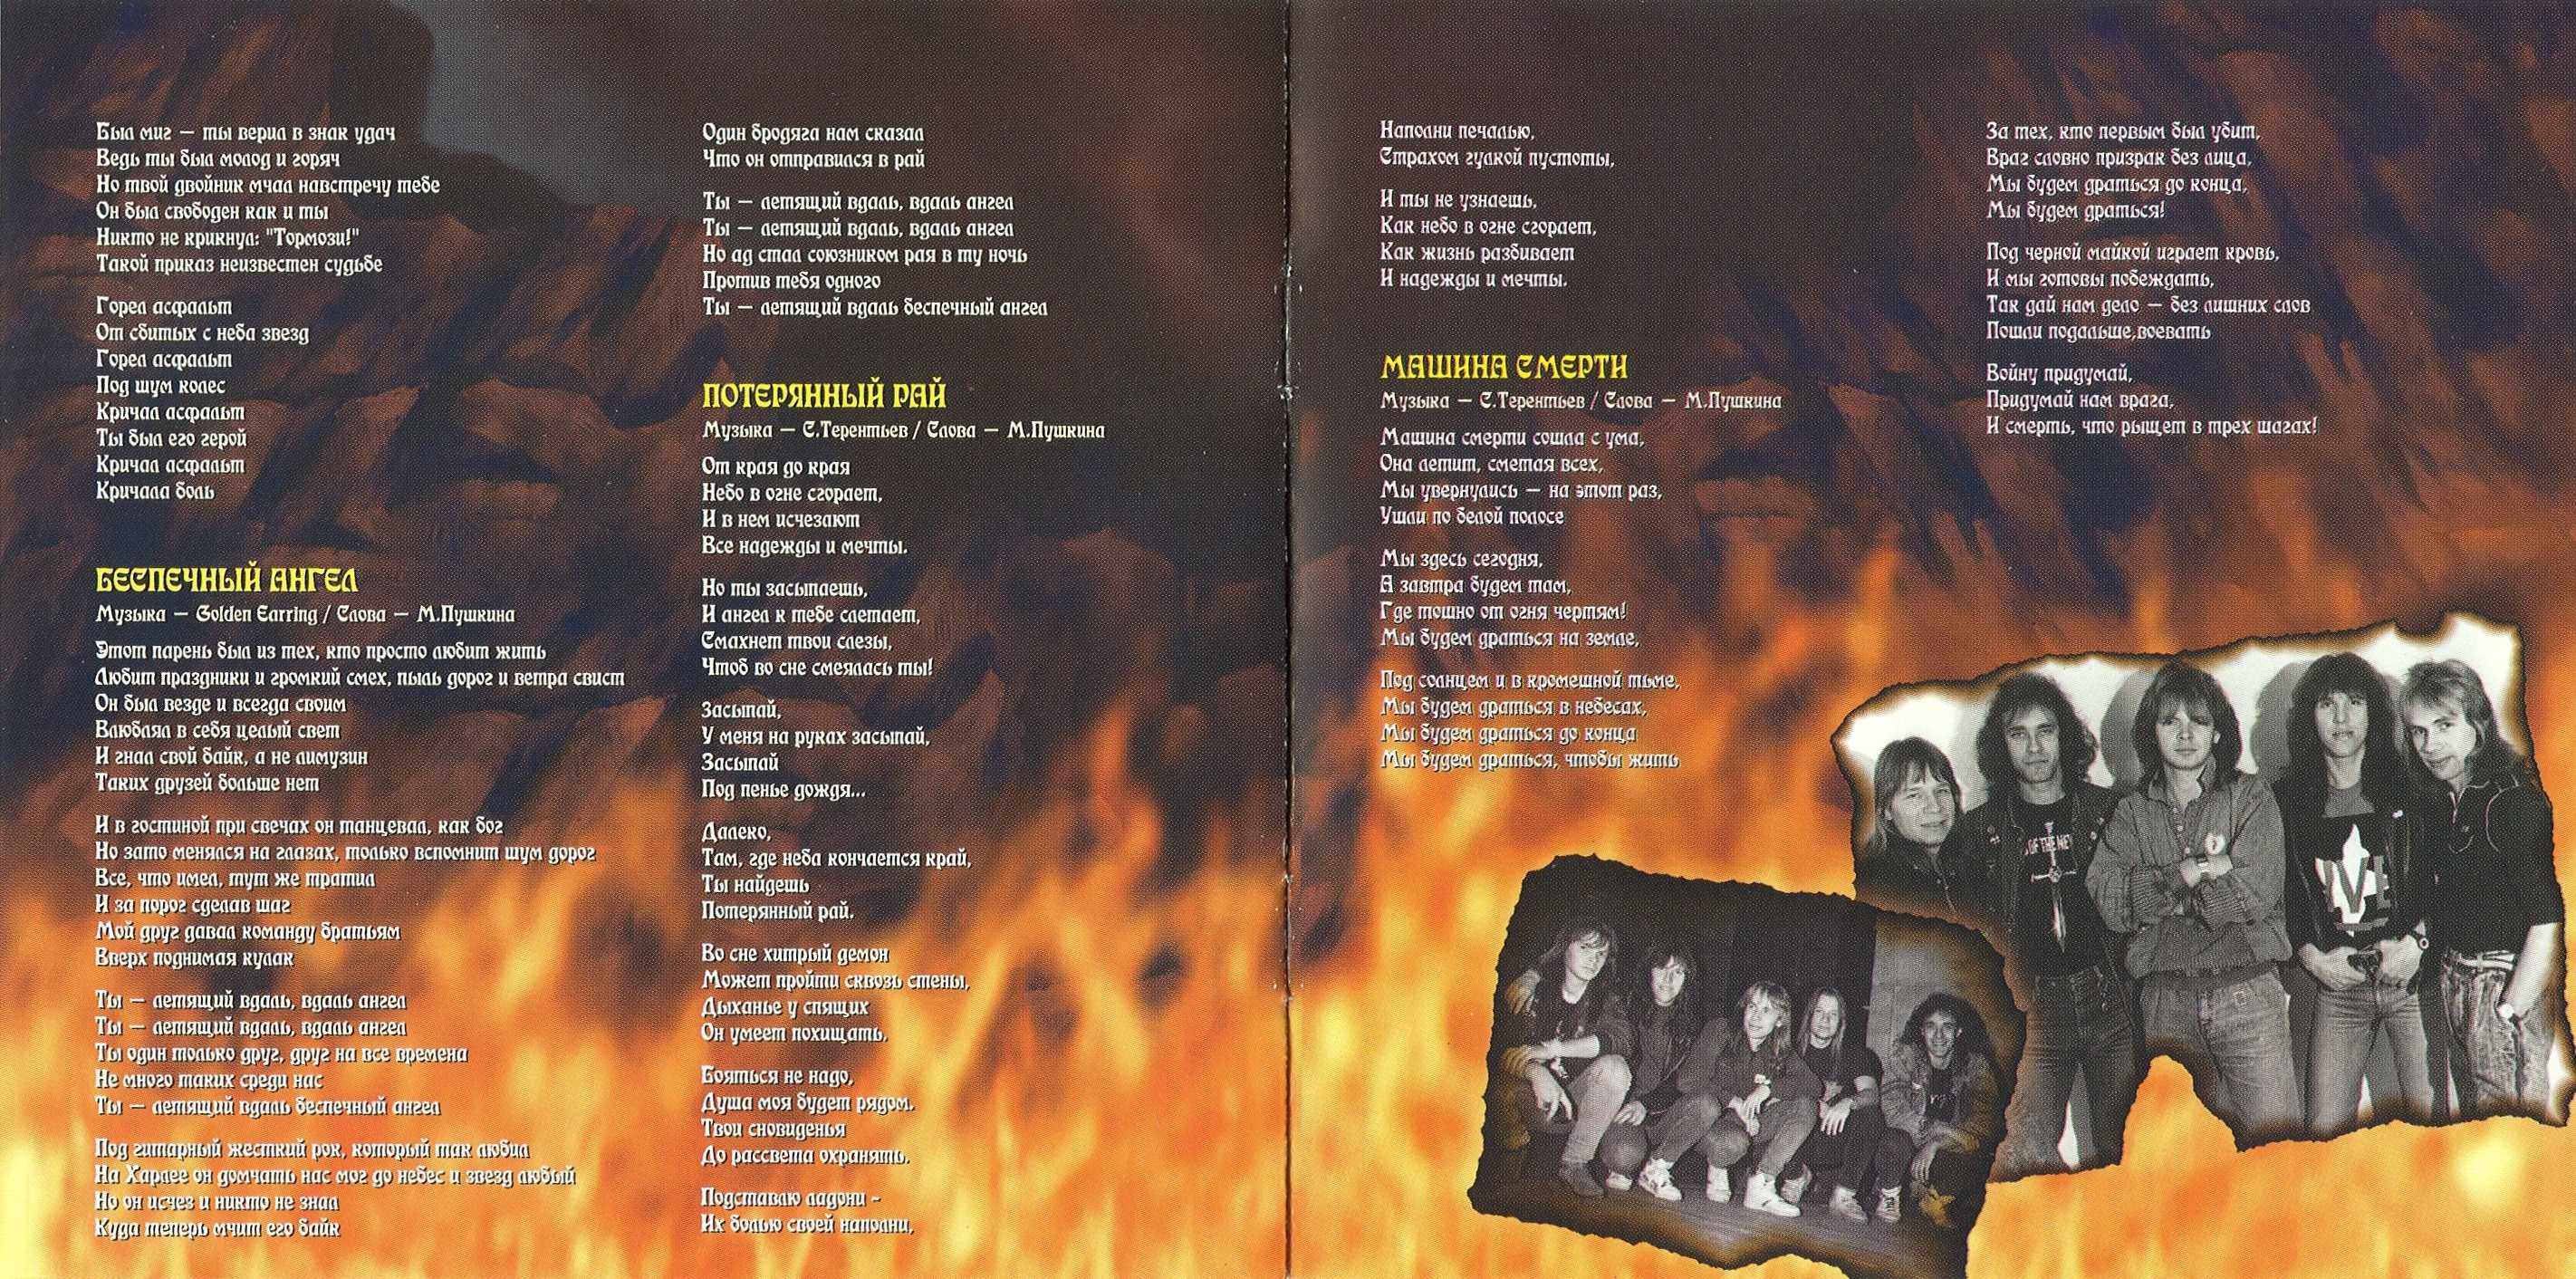 Альбом штиль. Ария 2002. Ария штиль диск. Ария штиль обложка. Группа Ария 1999.